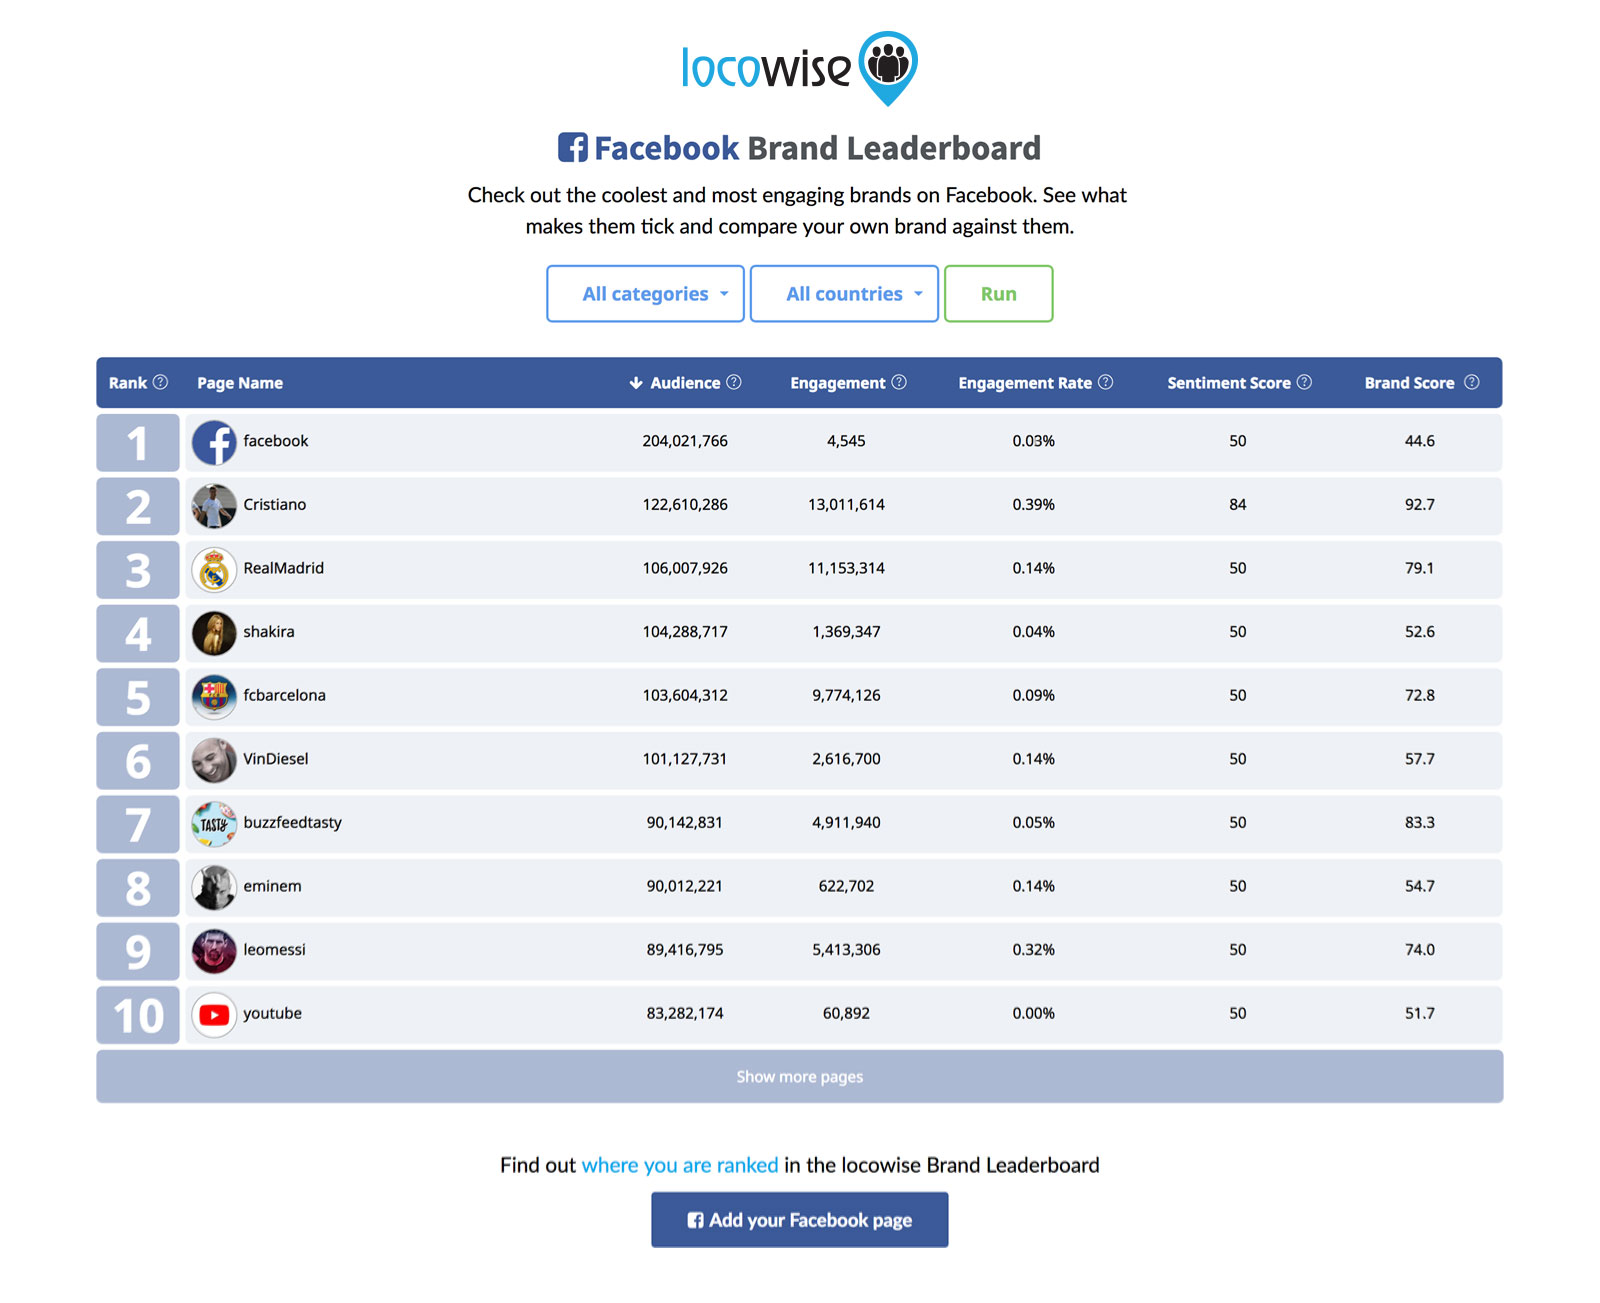 Locowise Facebook Leaderboard